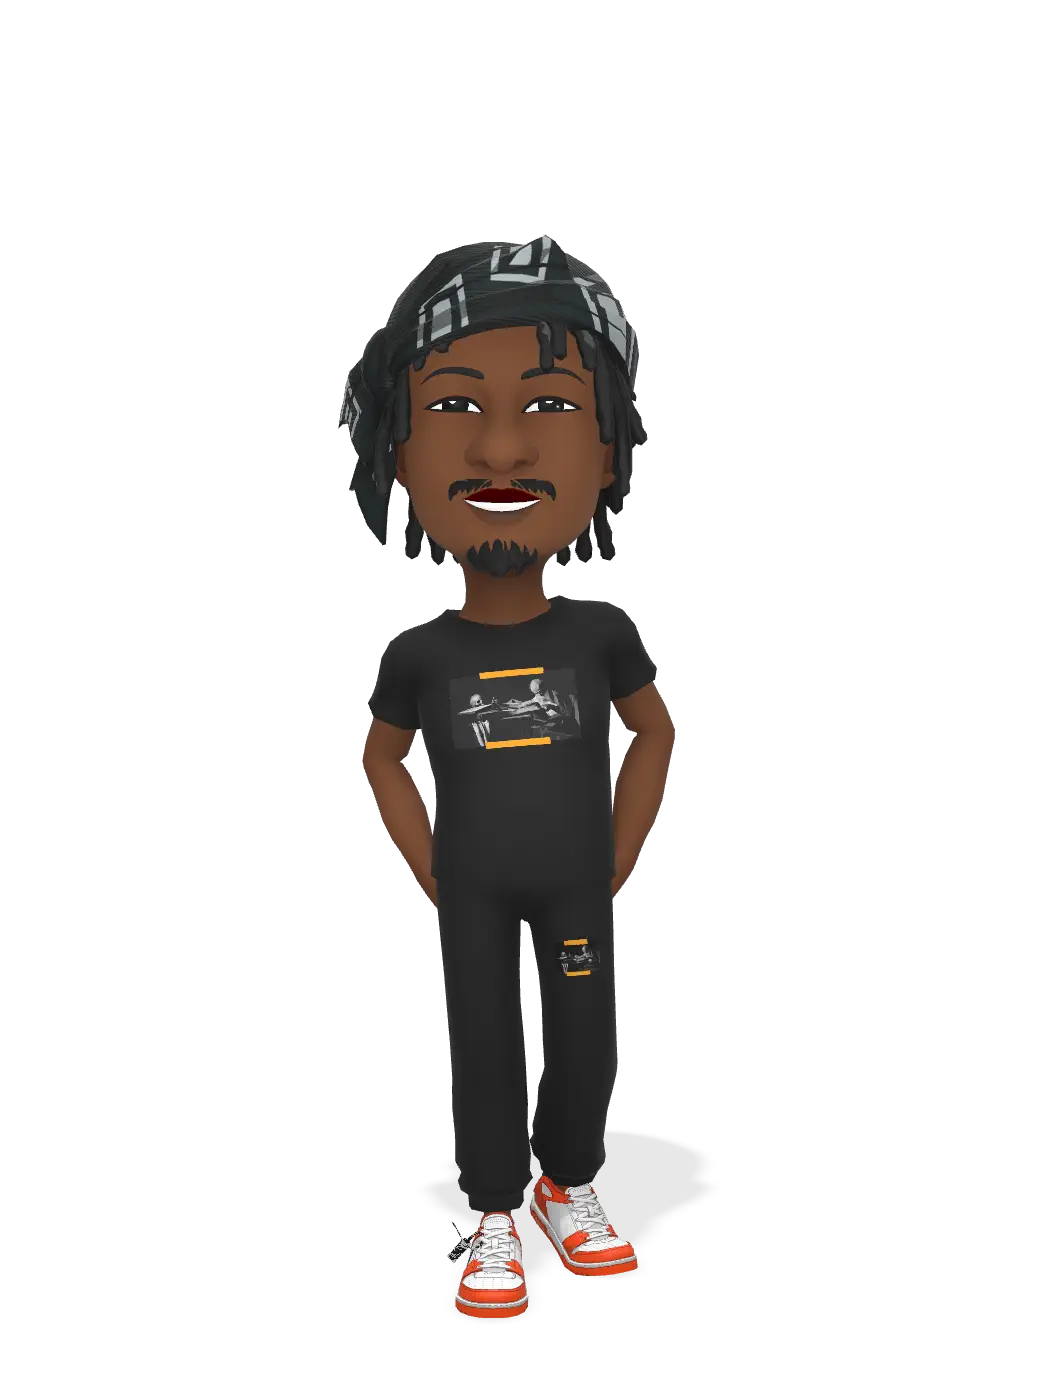 3D Bitmoji for nairamarleynm avatar